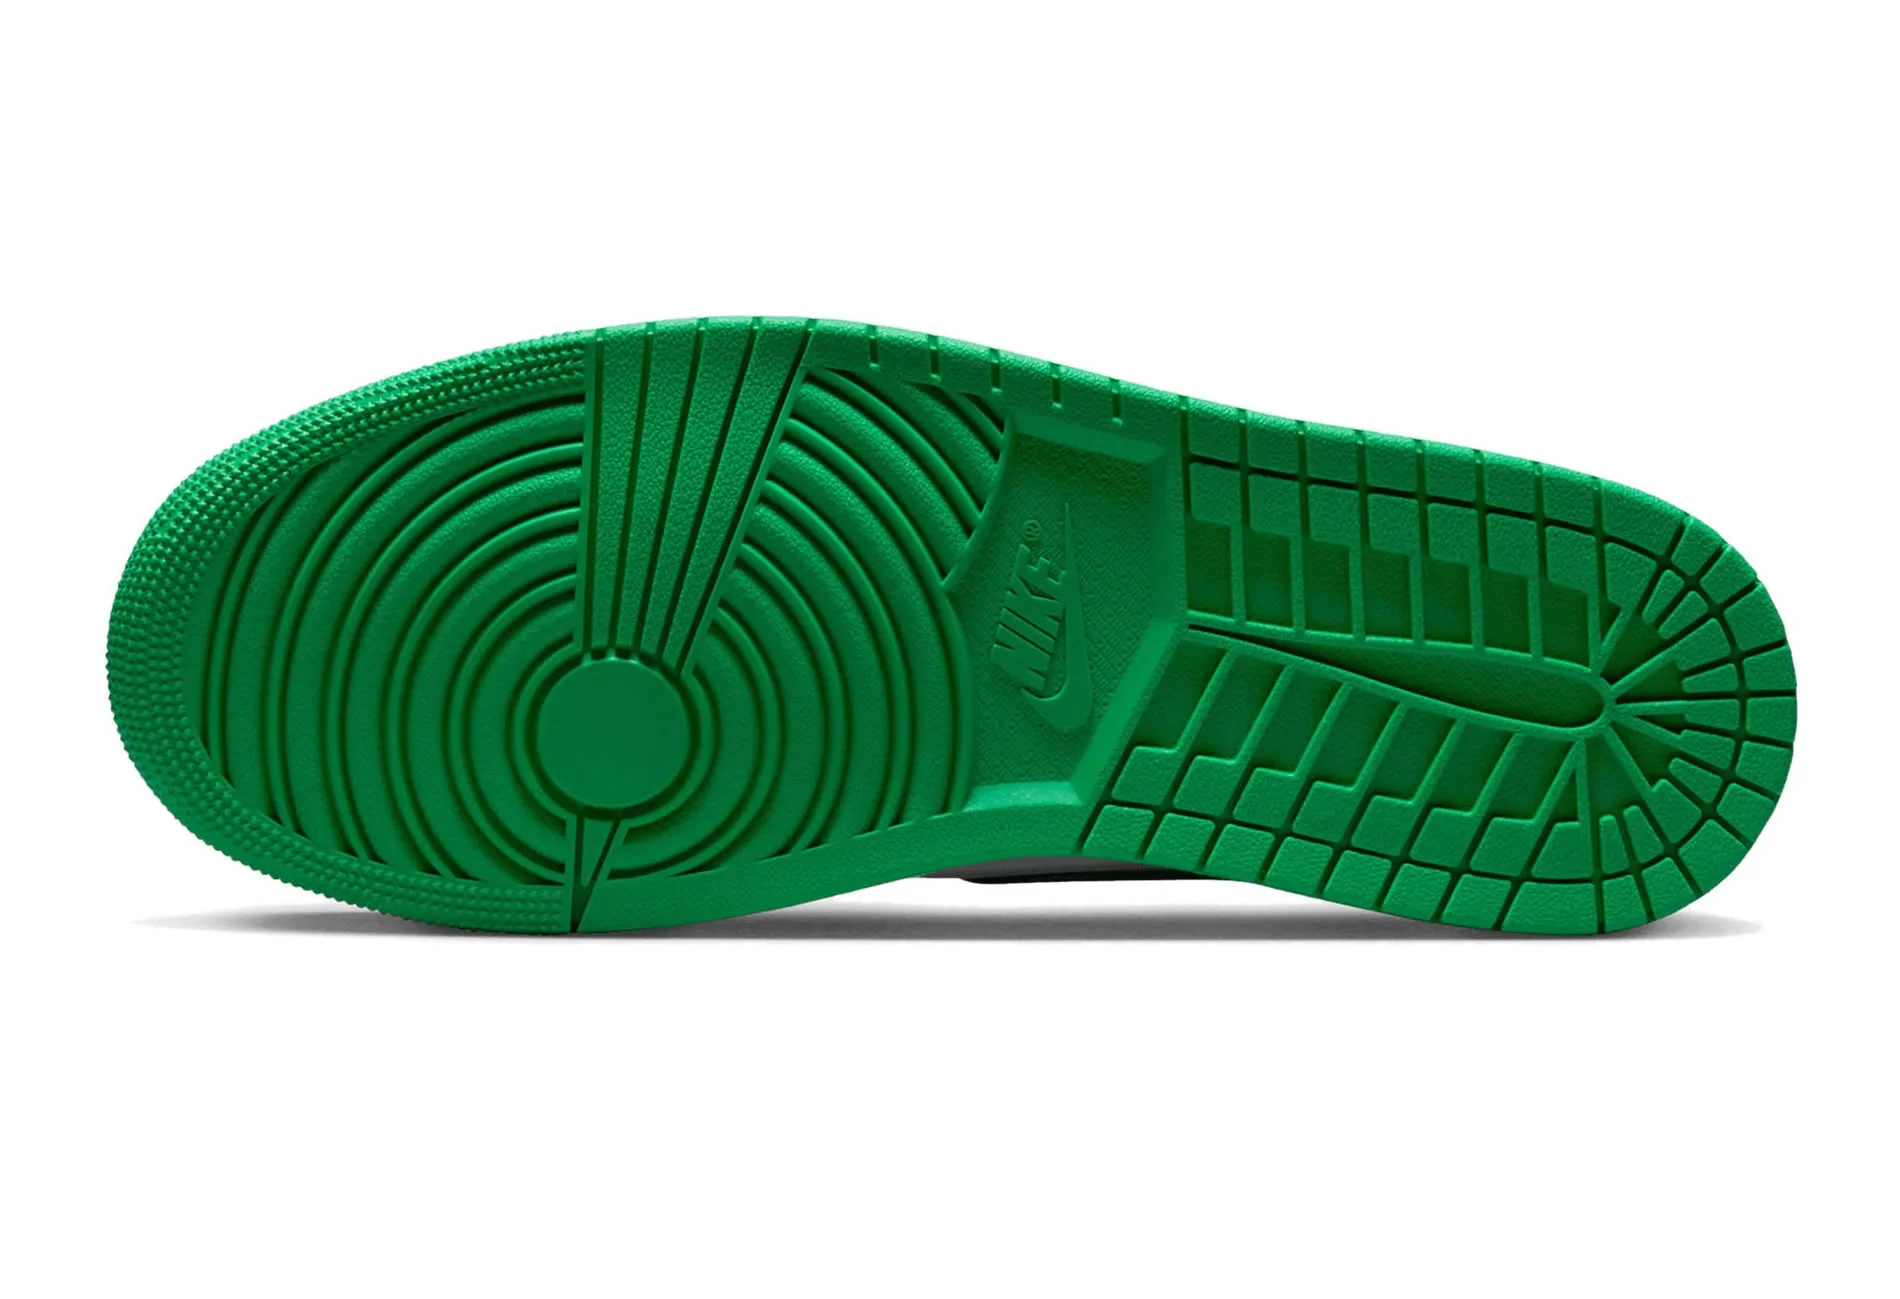 Air Jordan 1 Retro High Og Lucky Green Dz5485 031 Ljr Batch Sneakers (5) - www.ljrofficial.com